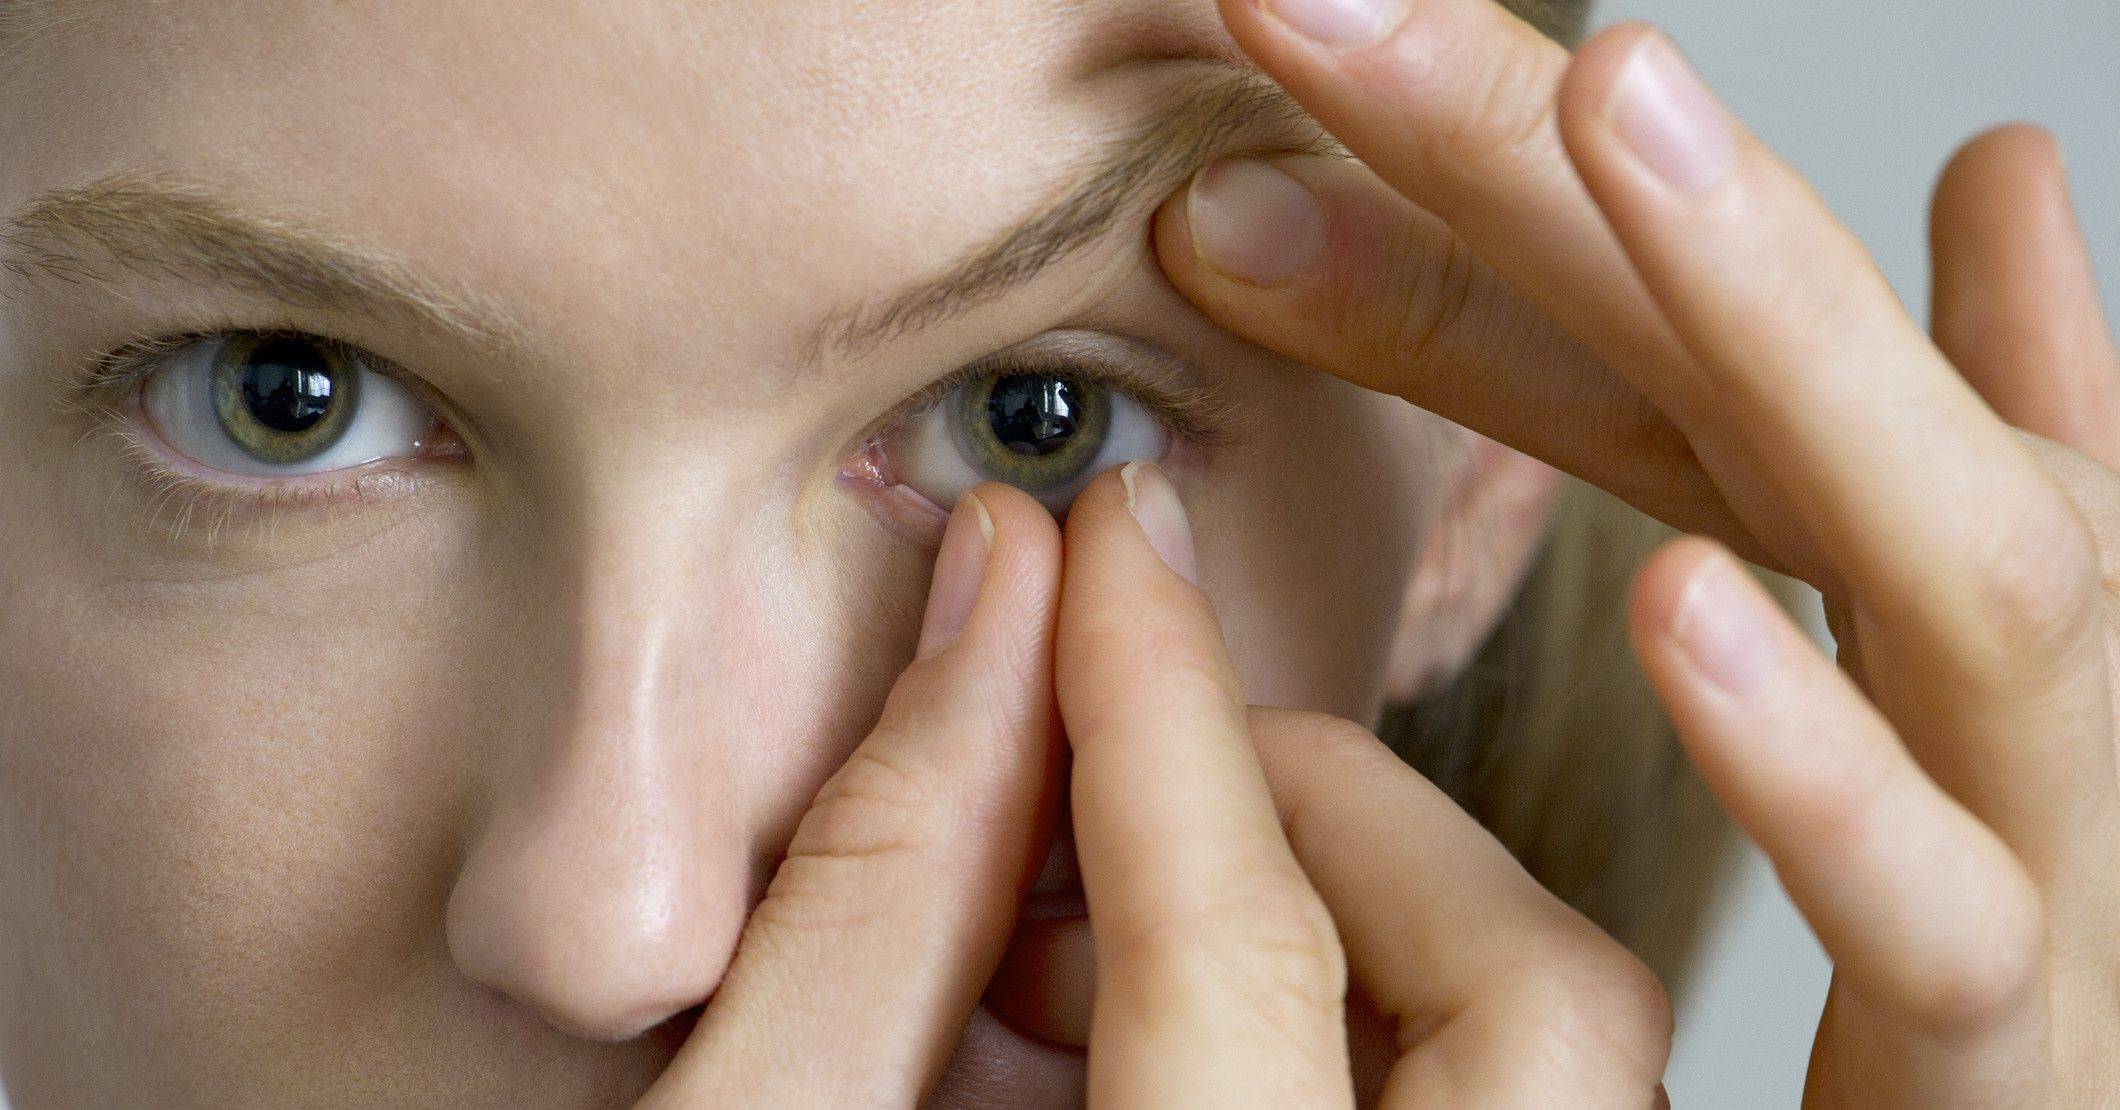 Вредны ли контактные линзы для глаз?